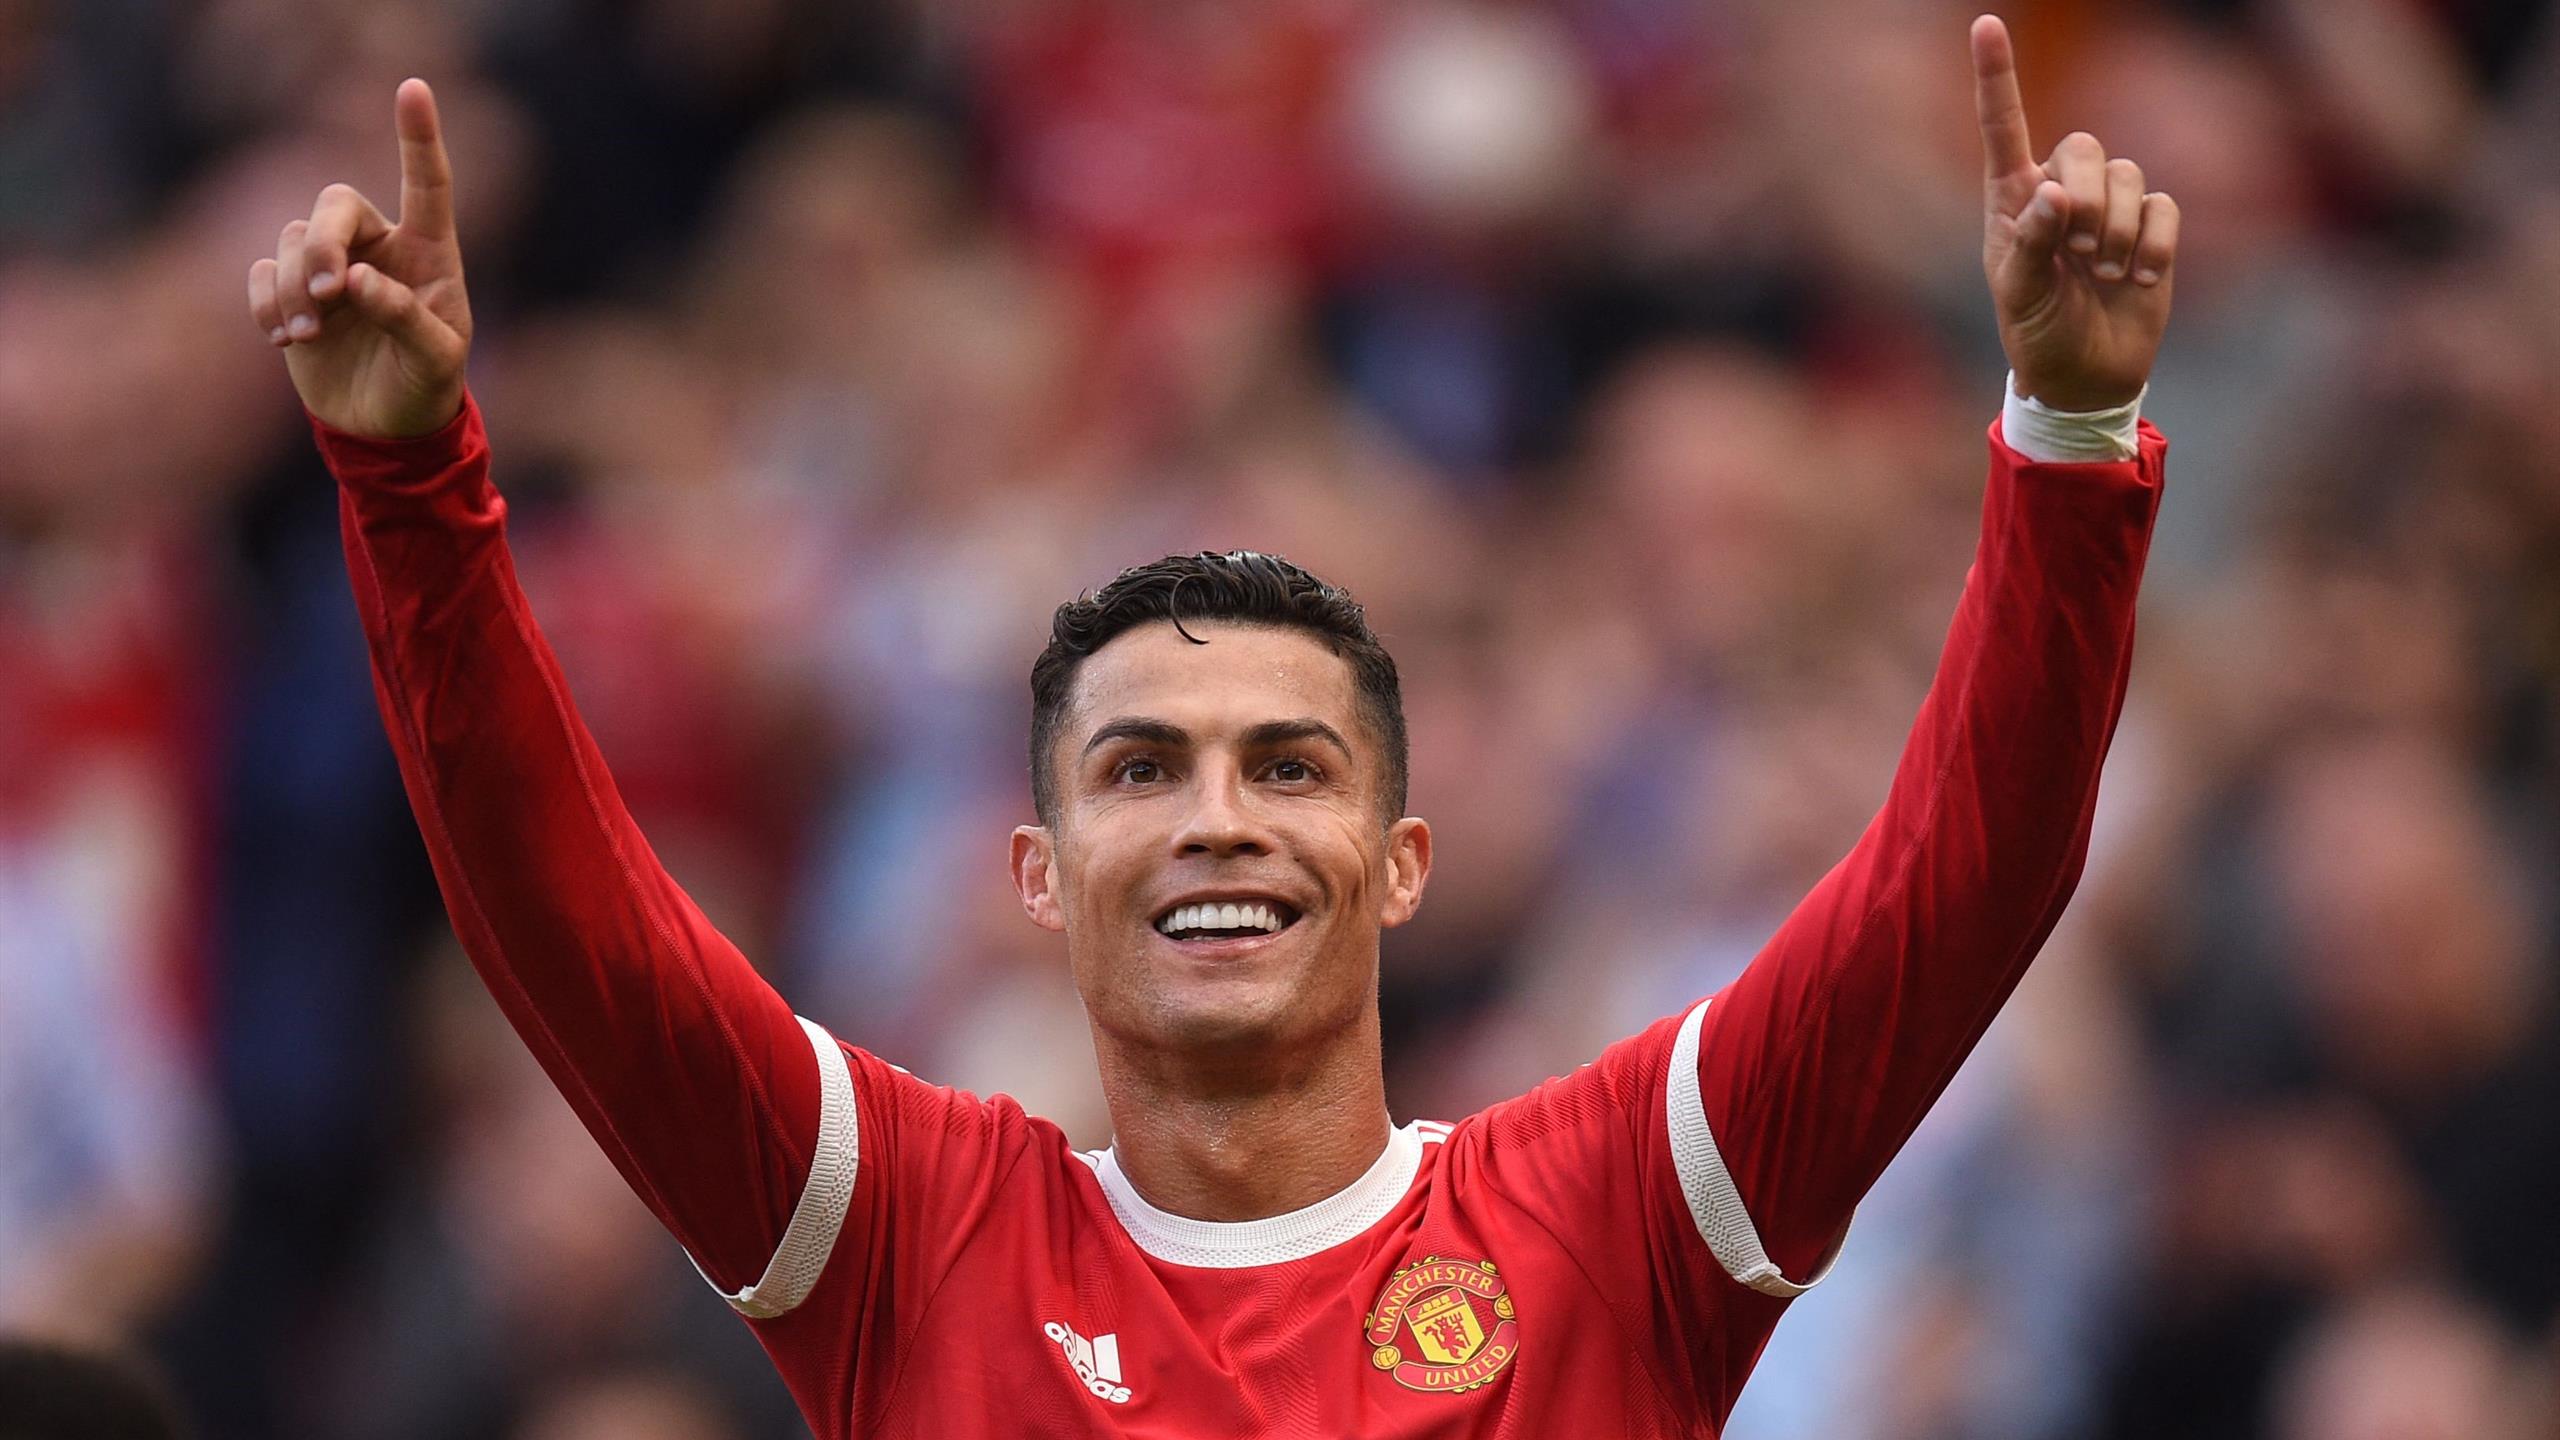 Fabrizio Romano: Cristiano Ronaldo leaves Manchester United future up in the air in latest interview.